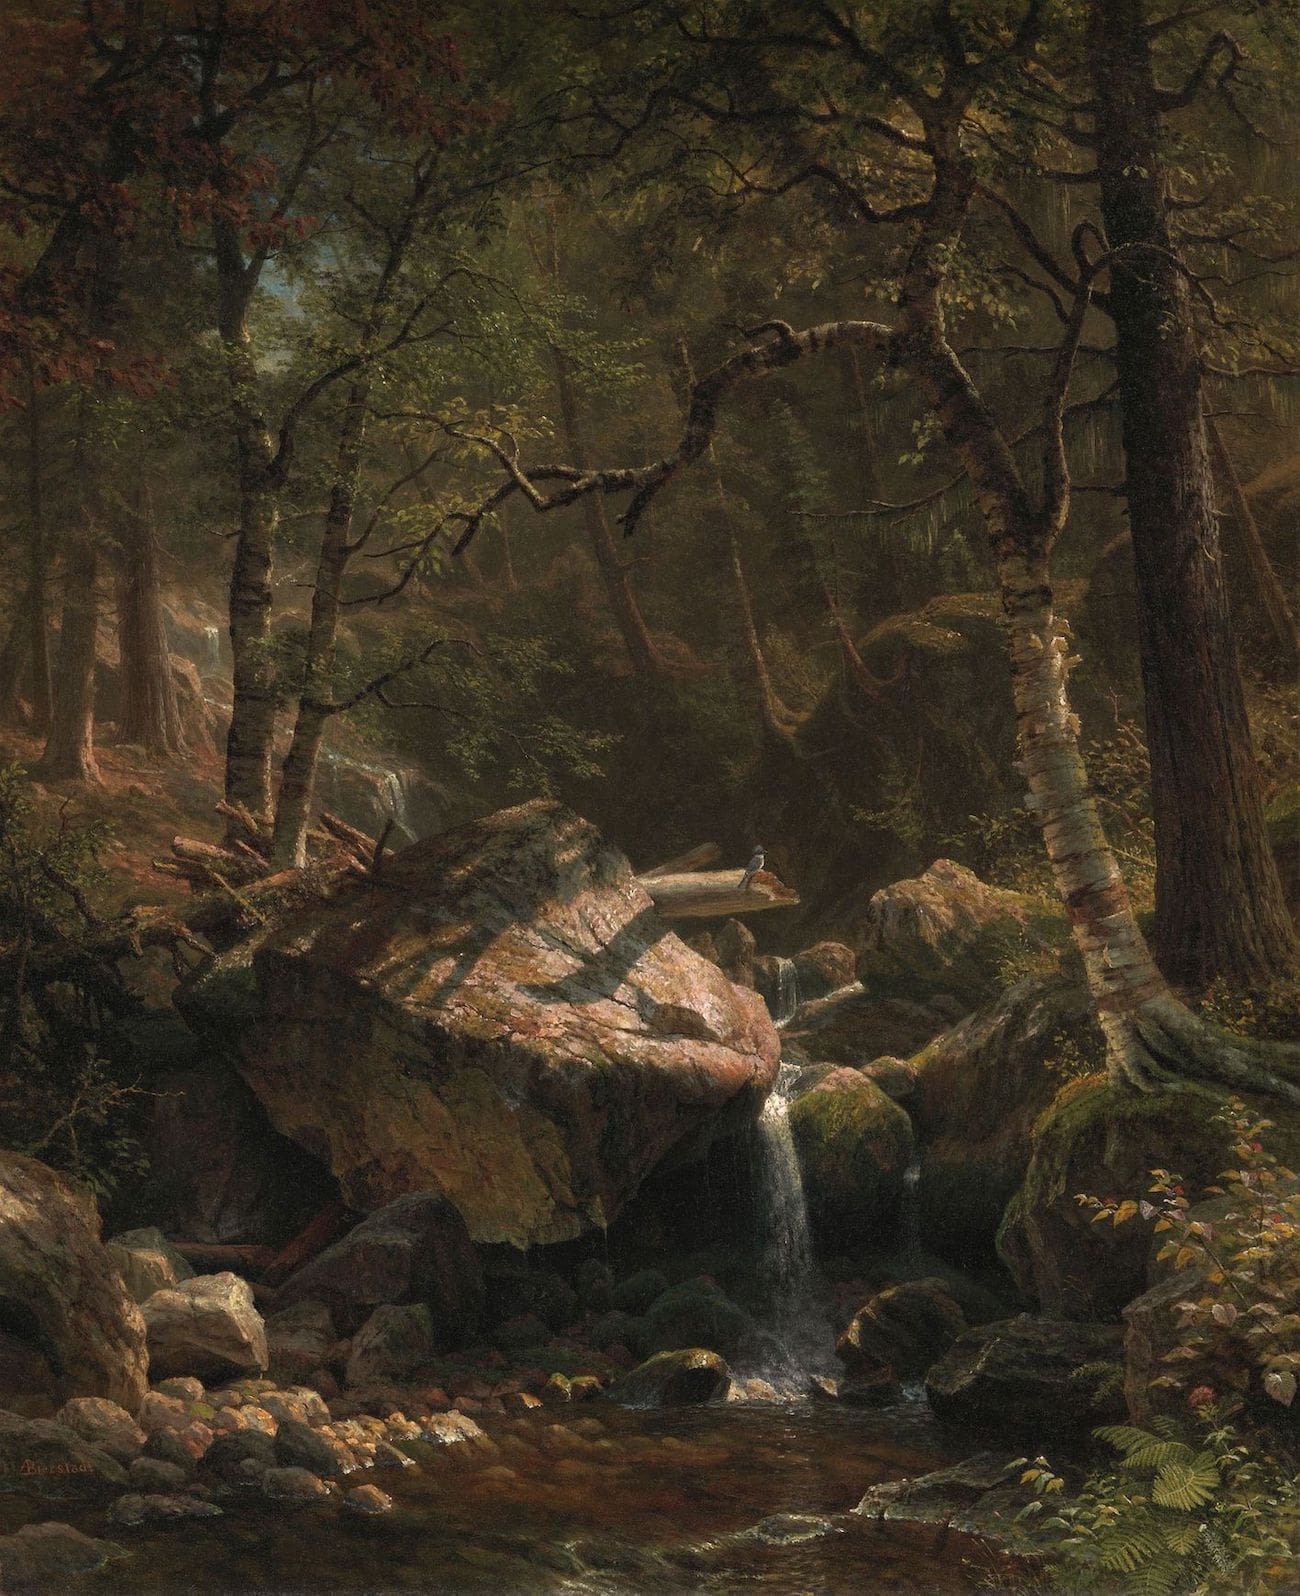 A Vista through Trees- Fontainebleau, 1873, Narcisse-Virgile Diaz de la Peña, The Metropolitan Museum of Art (article on forest therapy)